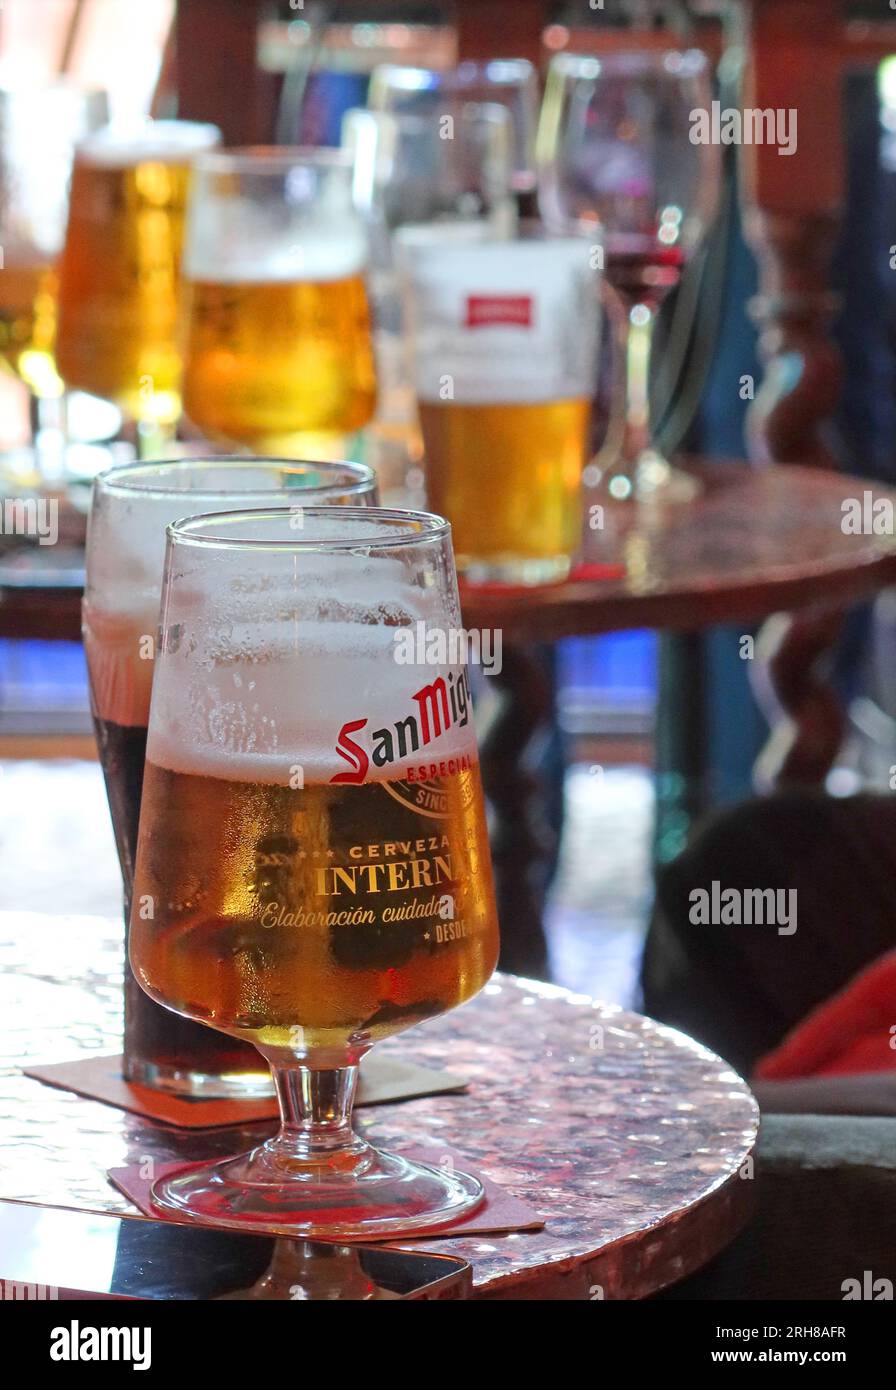 Degustazione di alcolici nel fine settimana in pub, mezza pinta vuota e bicchieri da vino, binge inglese Foto Stock